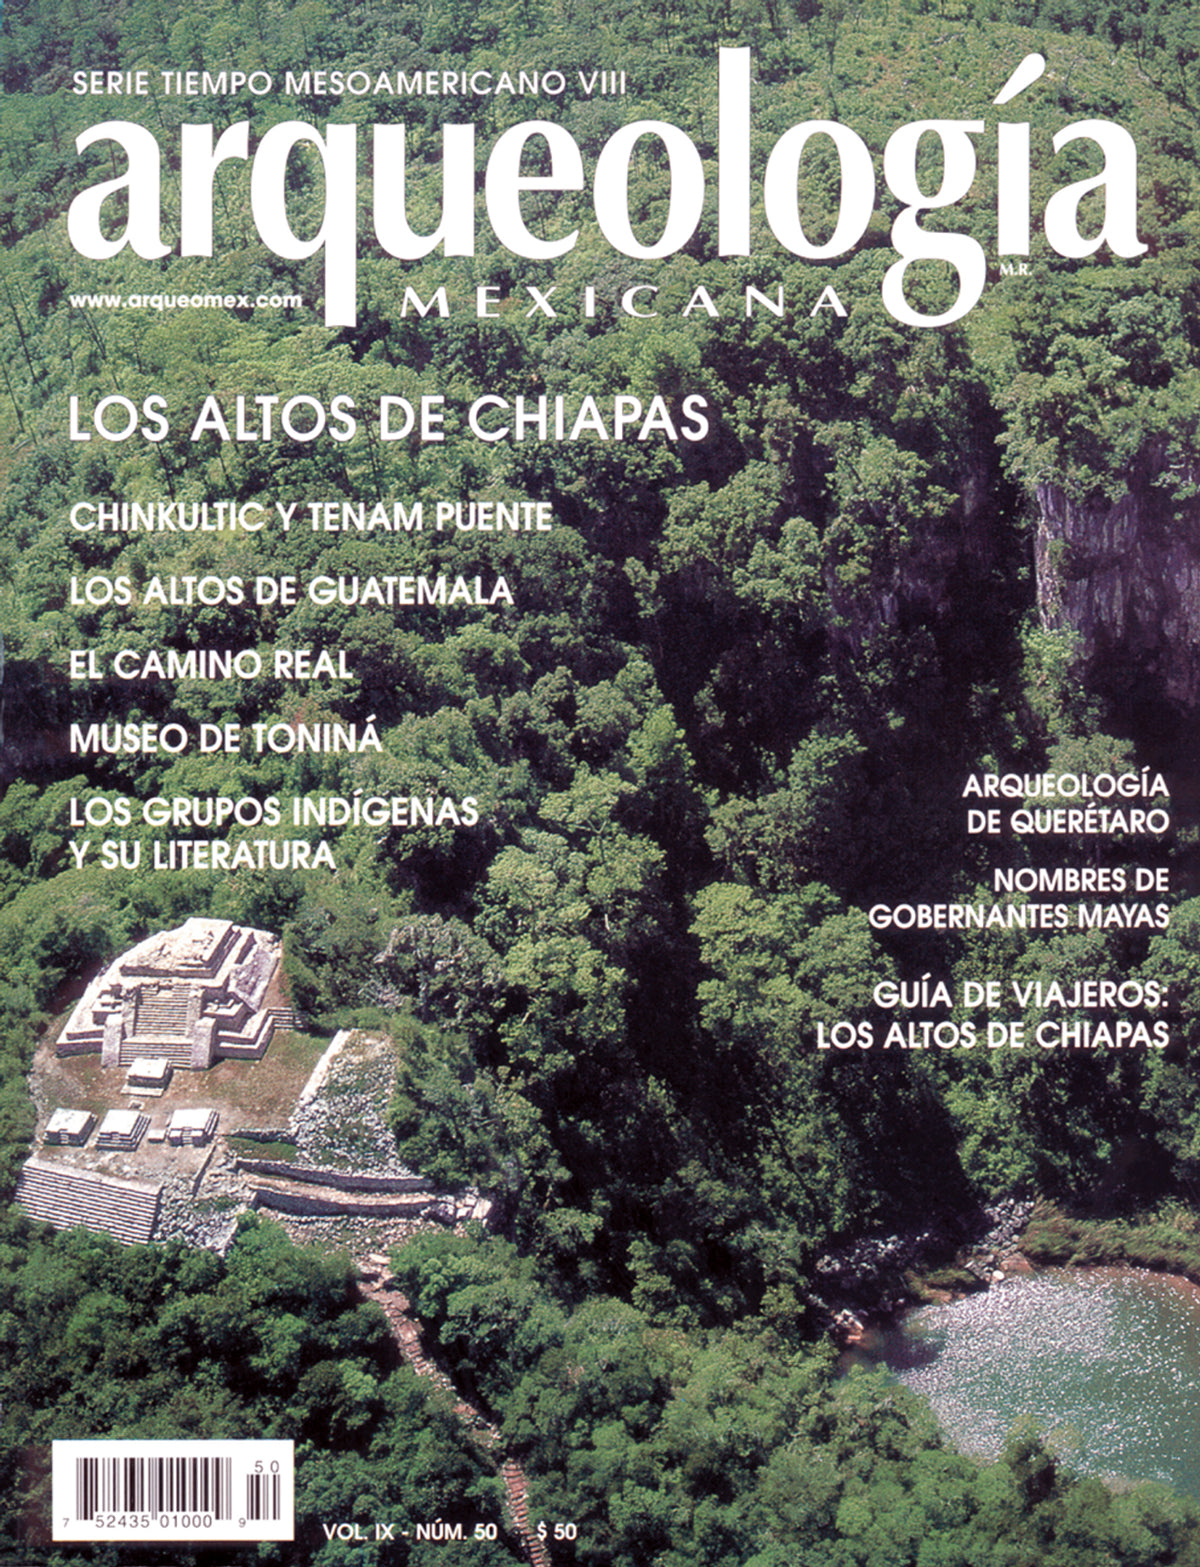 Los Altos de Chiapas